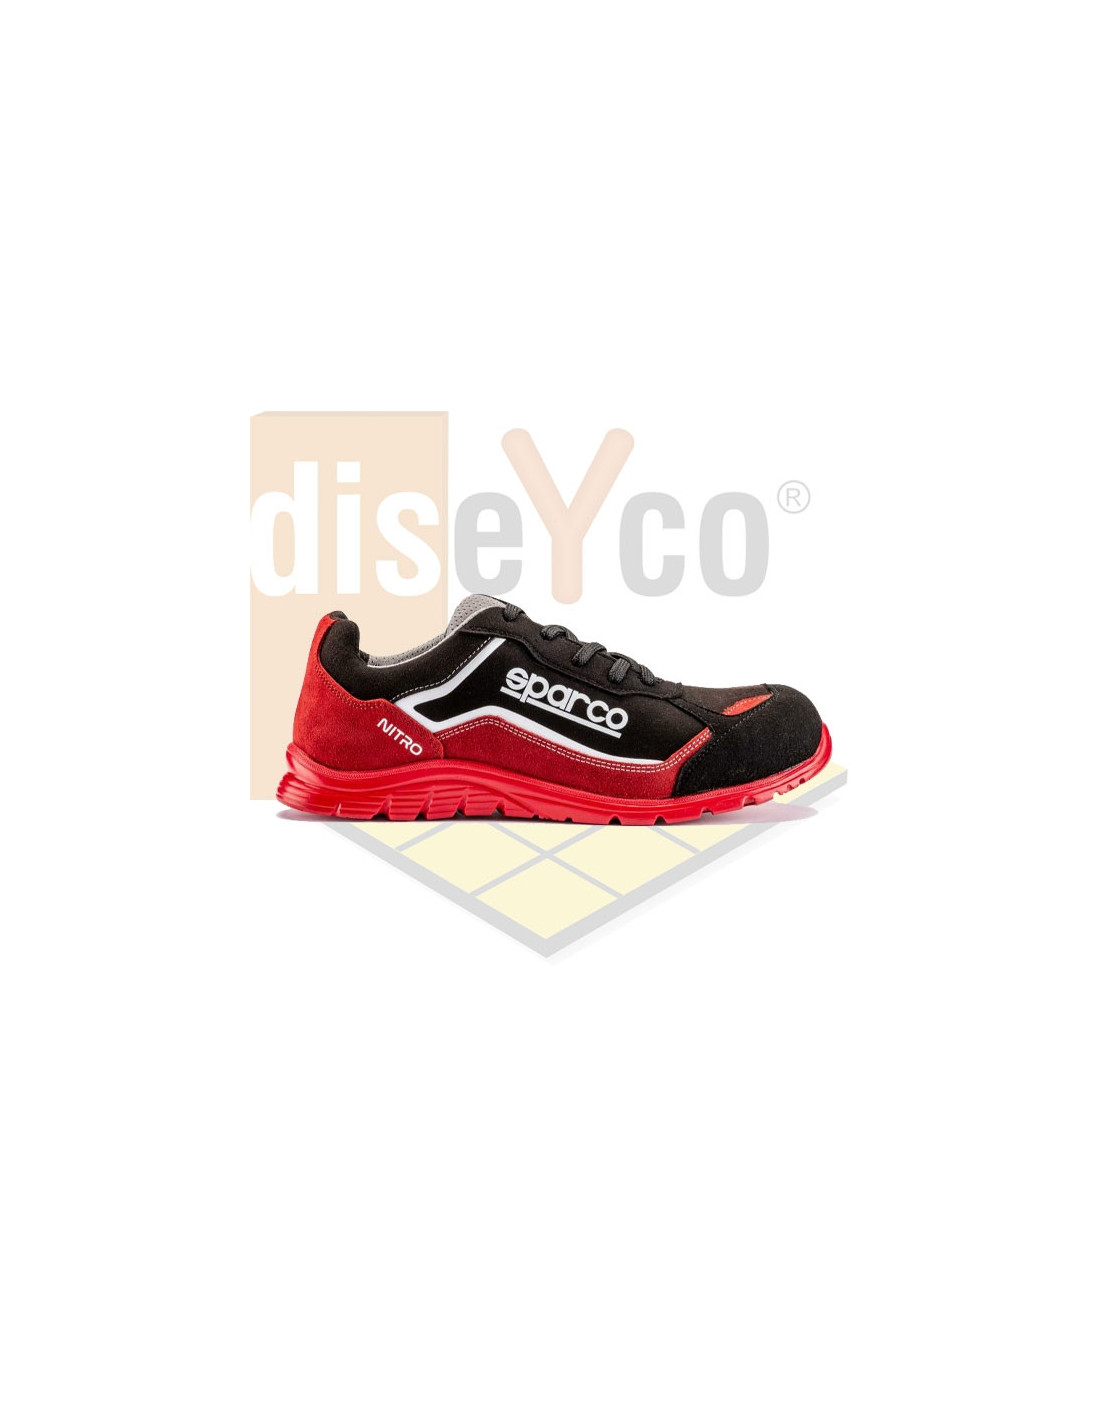 Zapatos Sparco Nitro S3-SRC